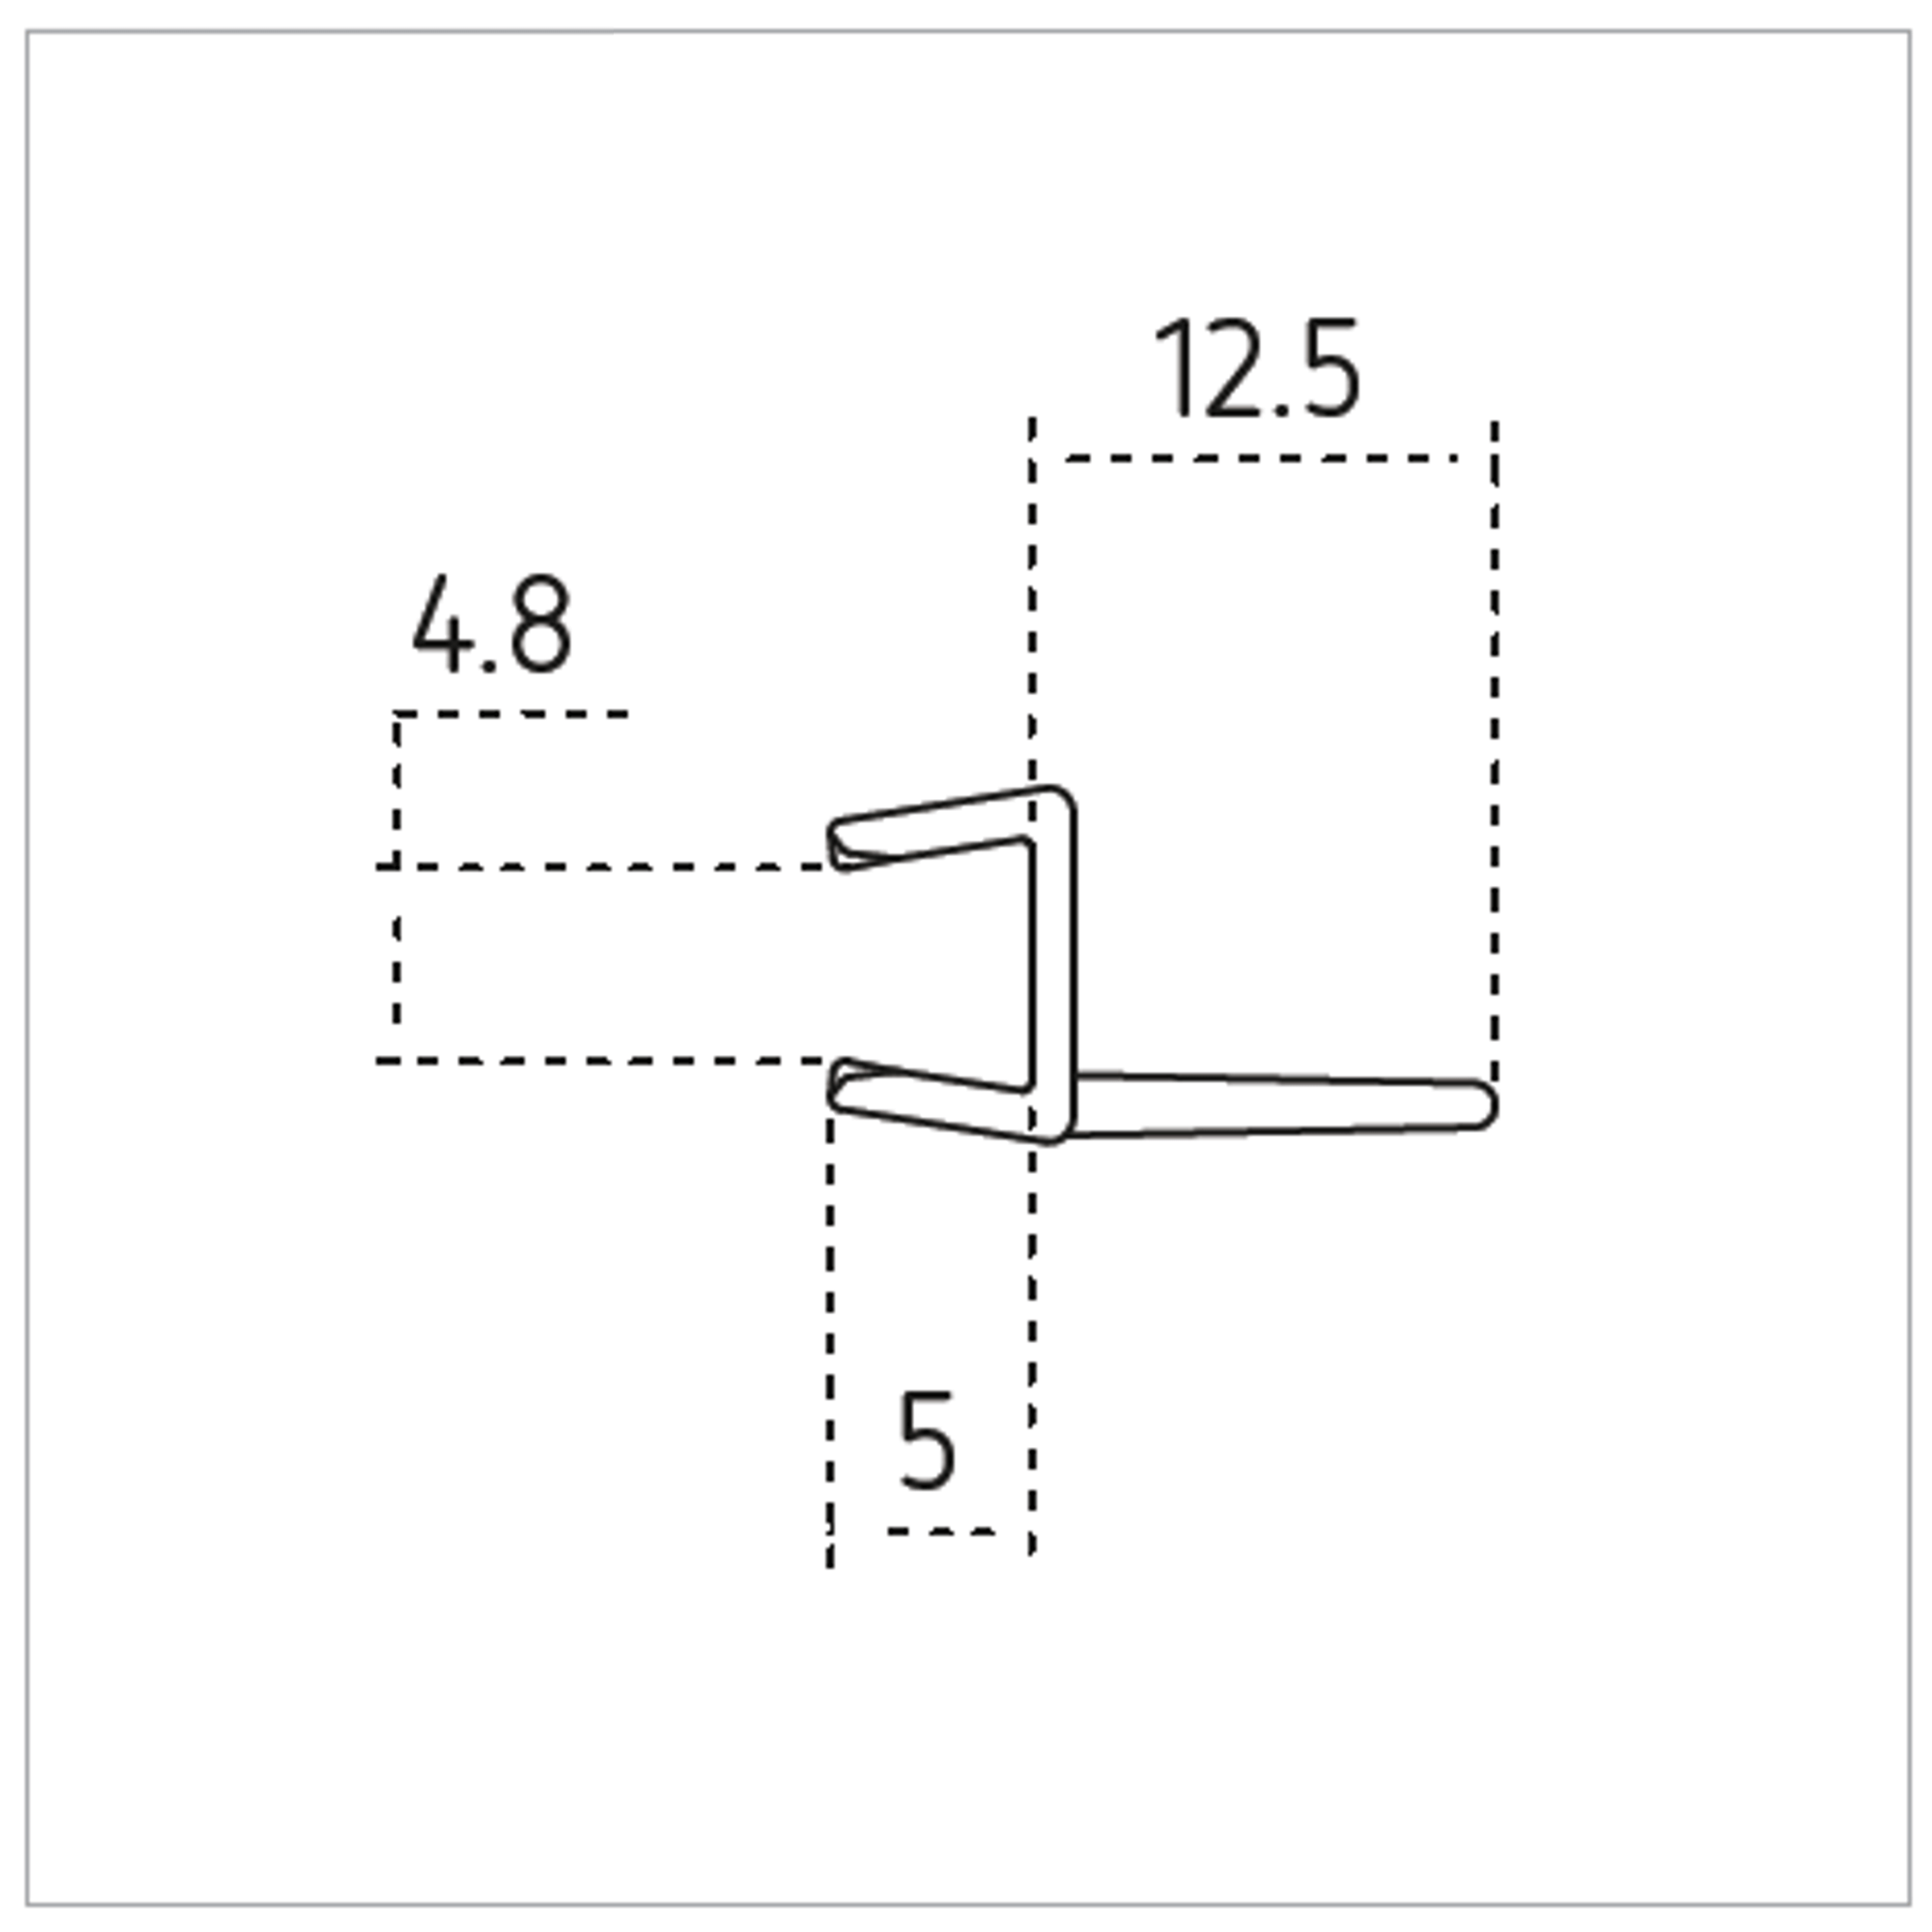 Dusbad Türzwischendichtung, Länge 2010mm - für Duschkabinen/ Duschabtrennungen mit Tür an Festteil 6mm